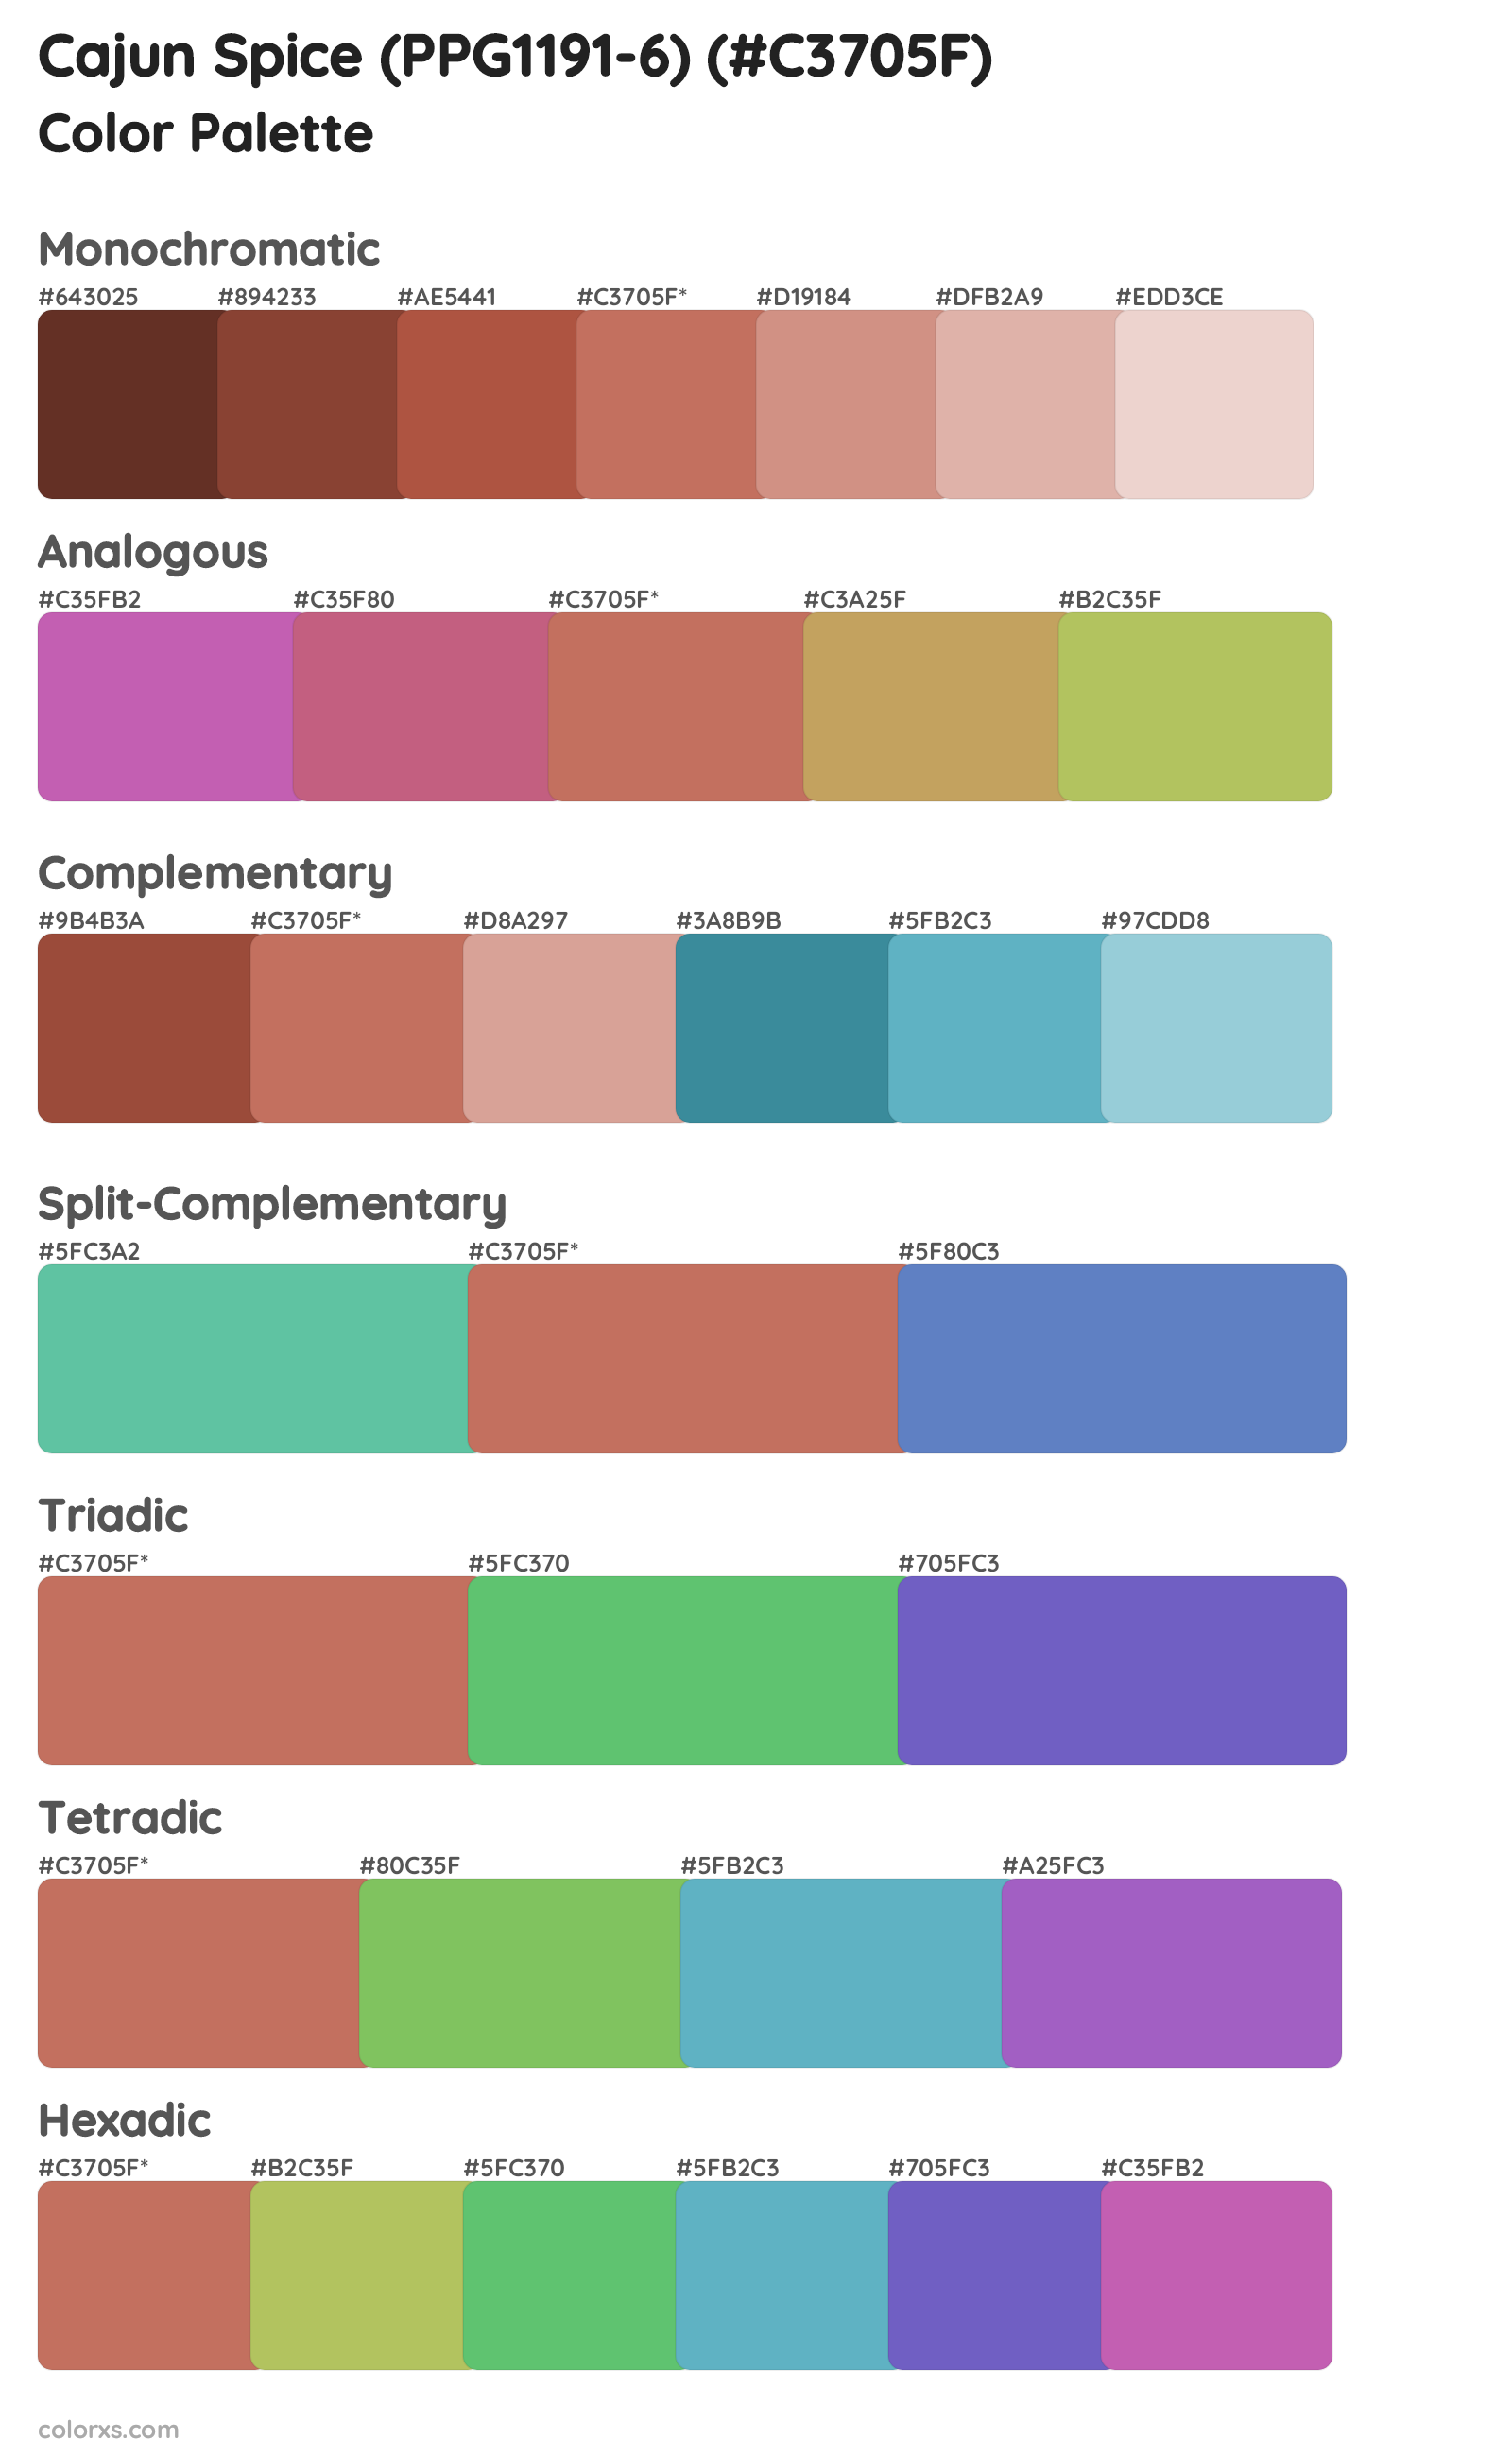 Cajun Spice (PPG1191-6) Color Scheme Palettes